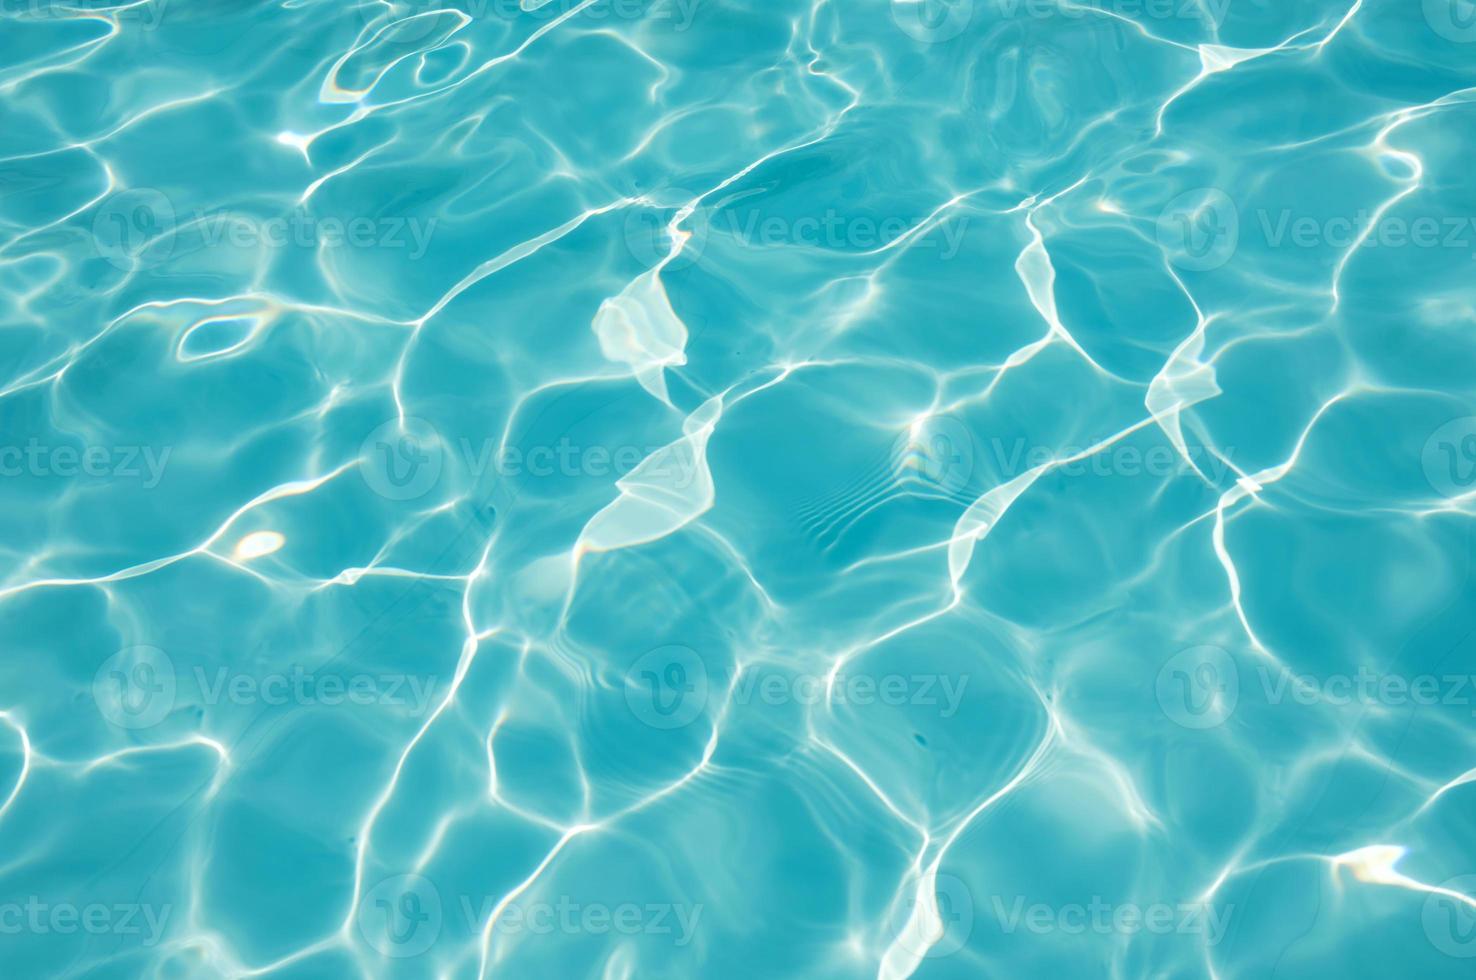 fond ondulé de l'eau bleue dans la piscine photo